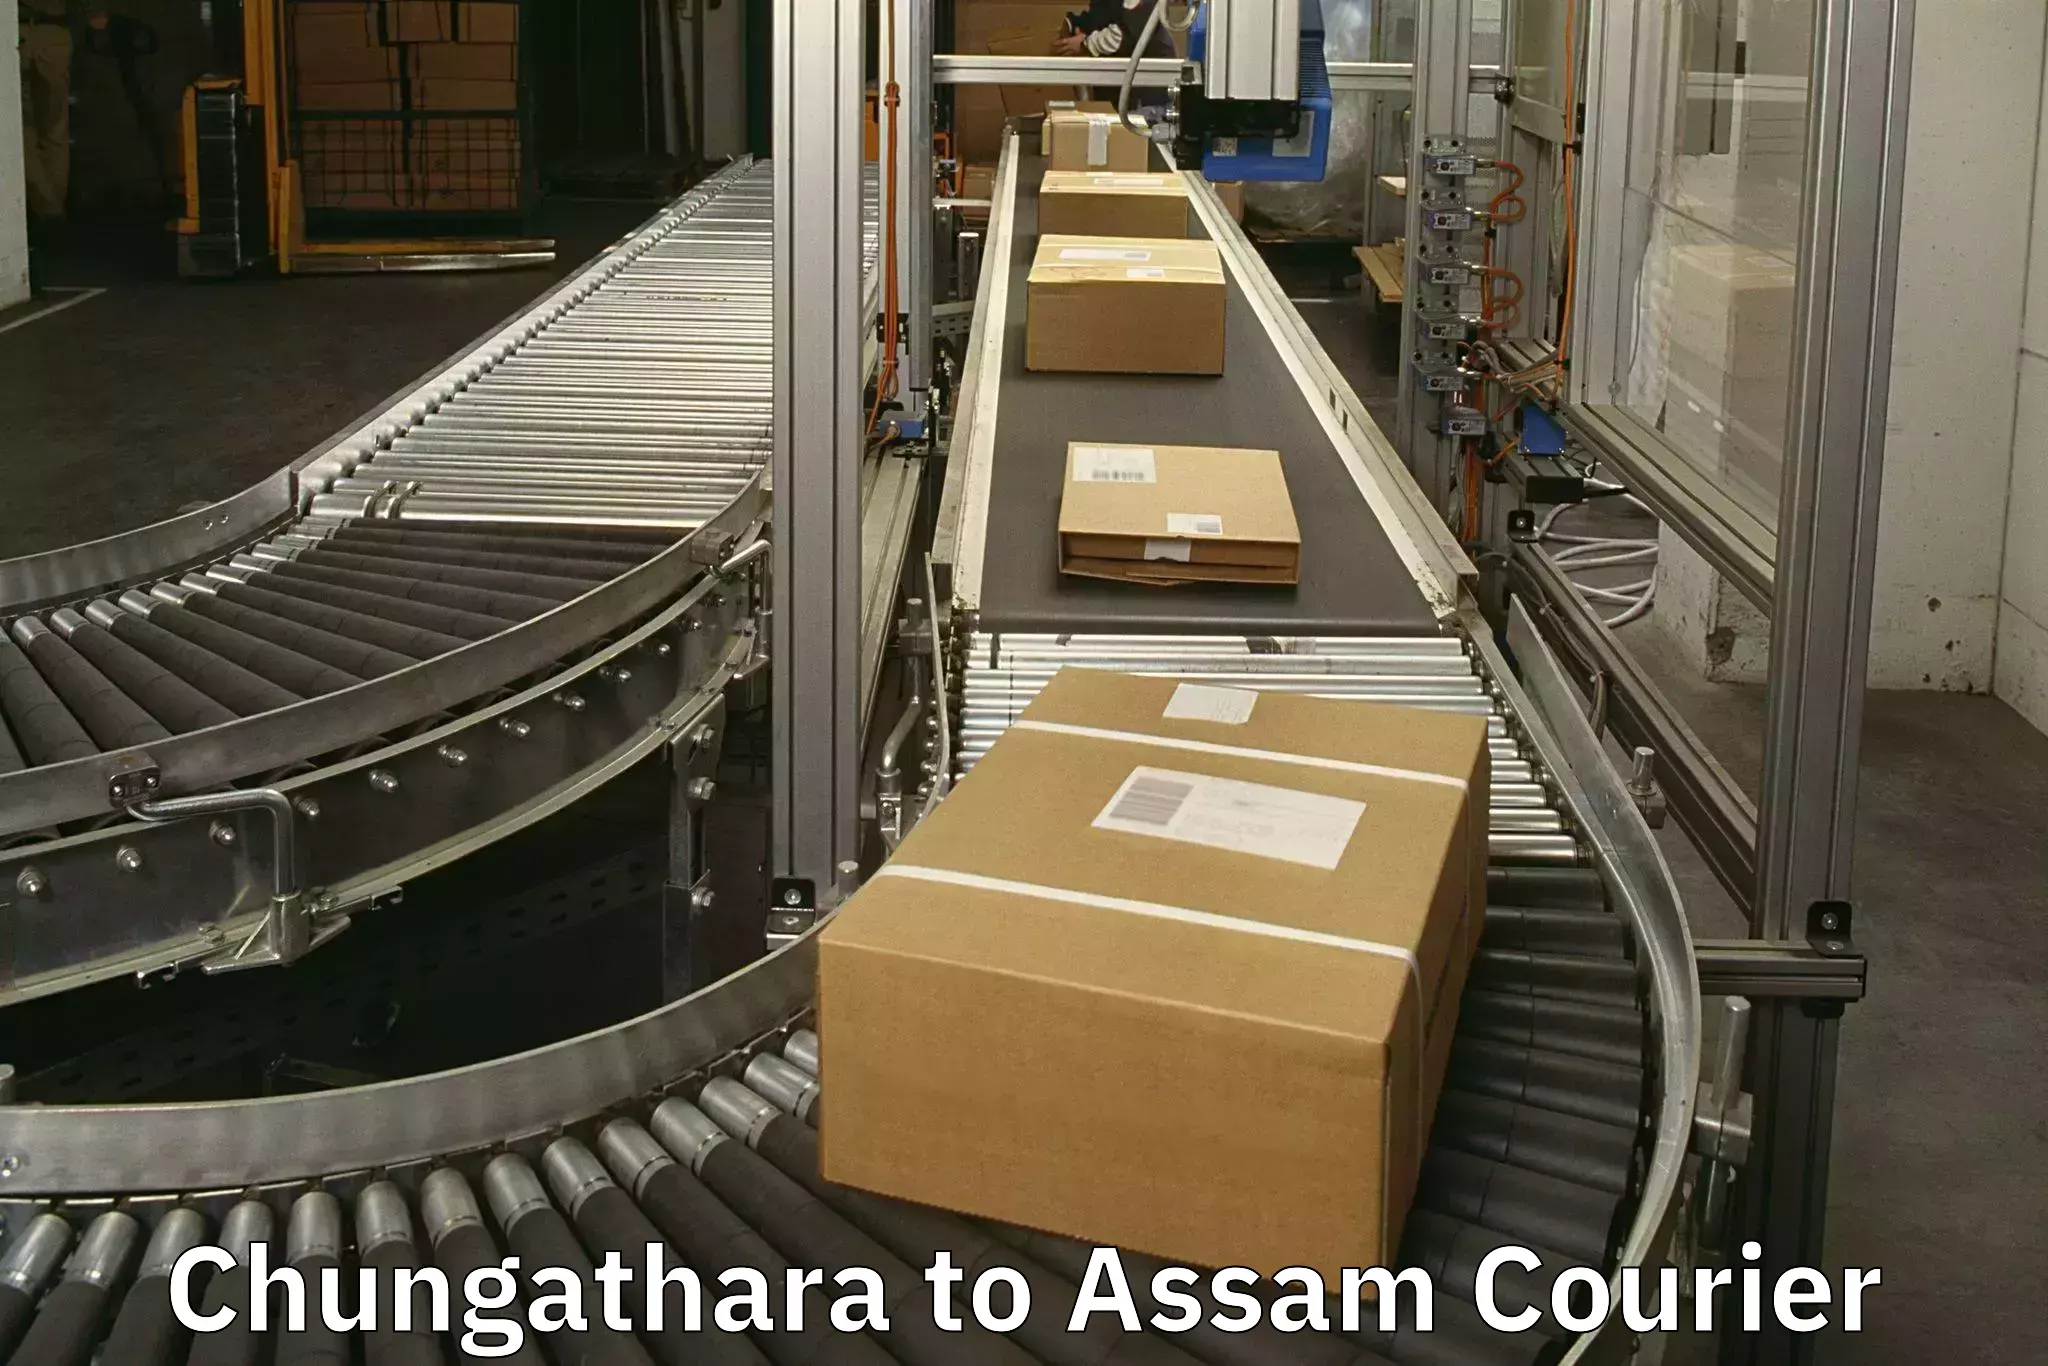 Luggage transit service Chungathara to Assam